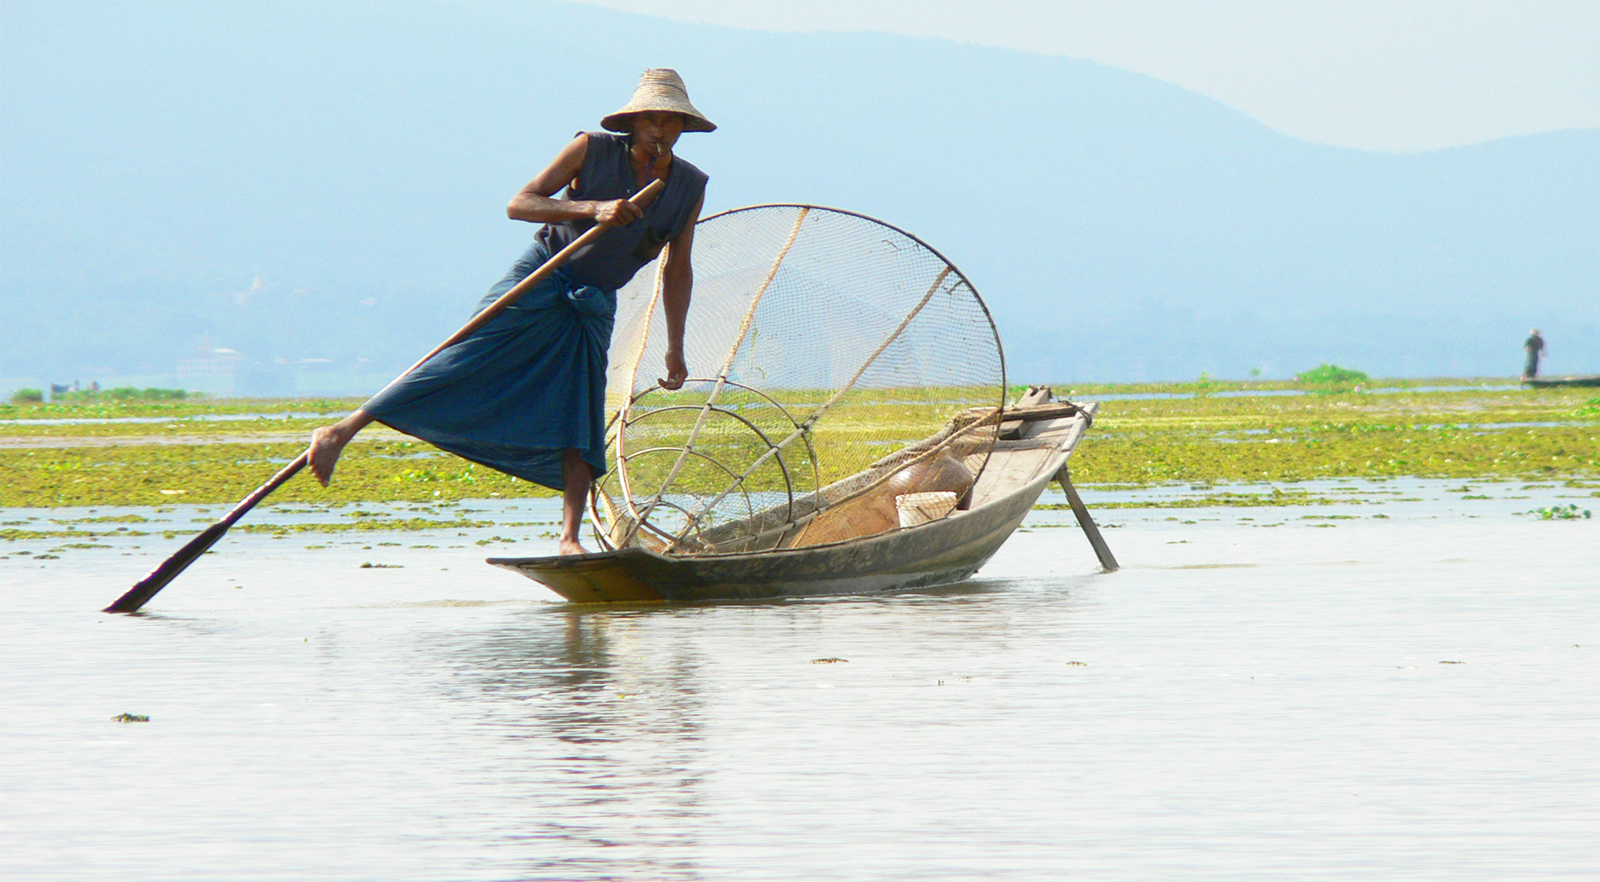 Myanmar - Inle Lake